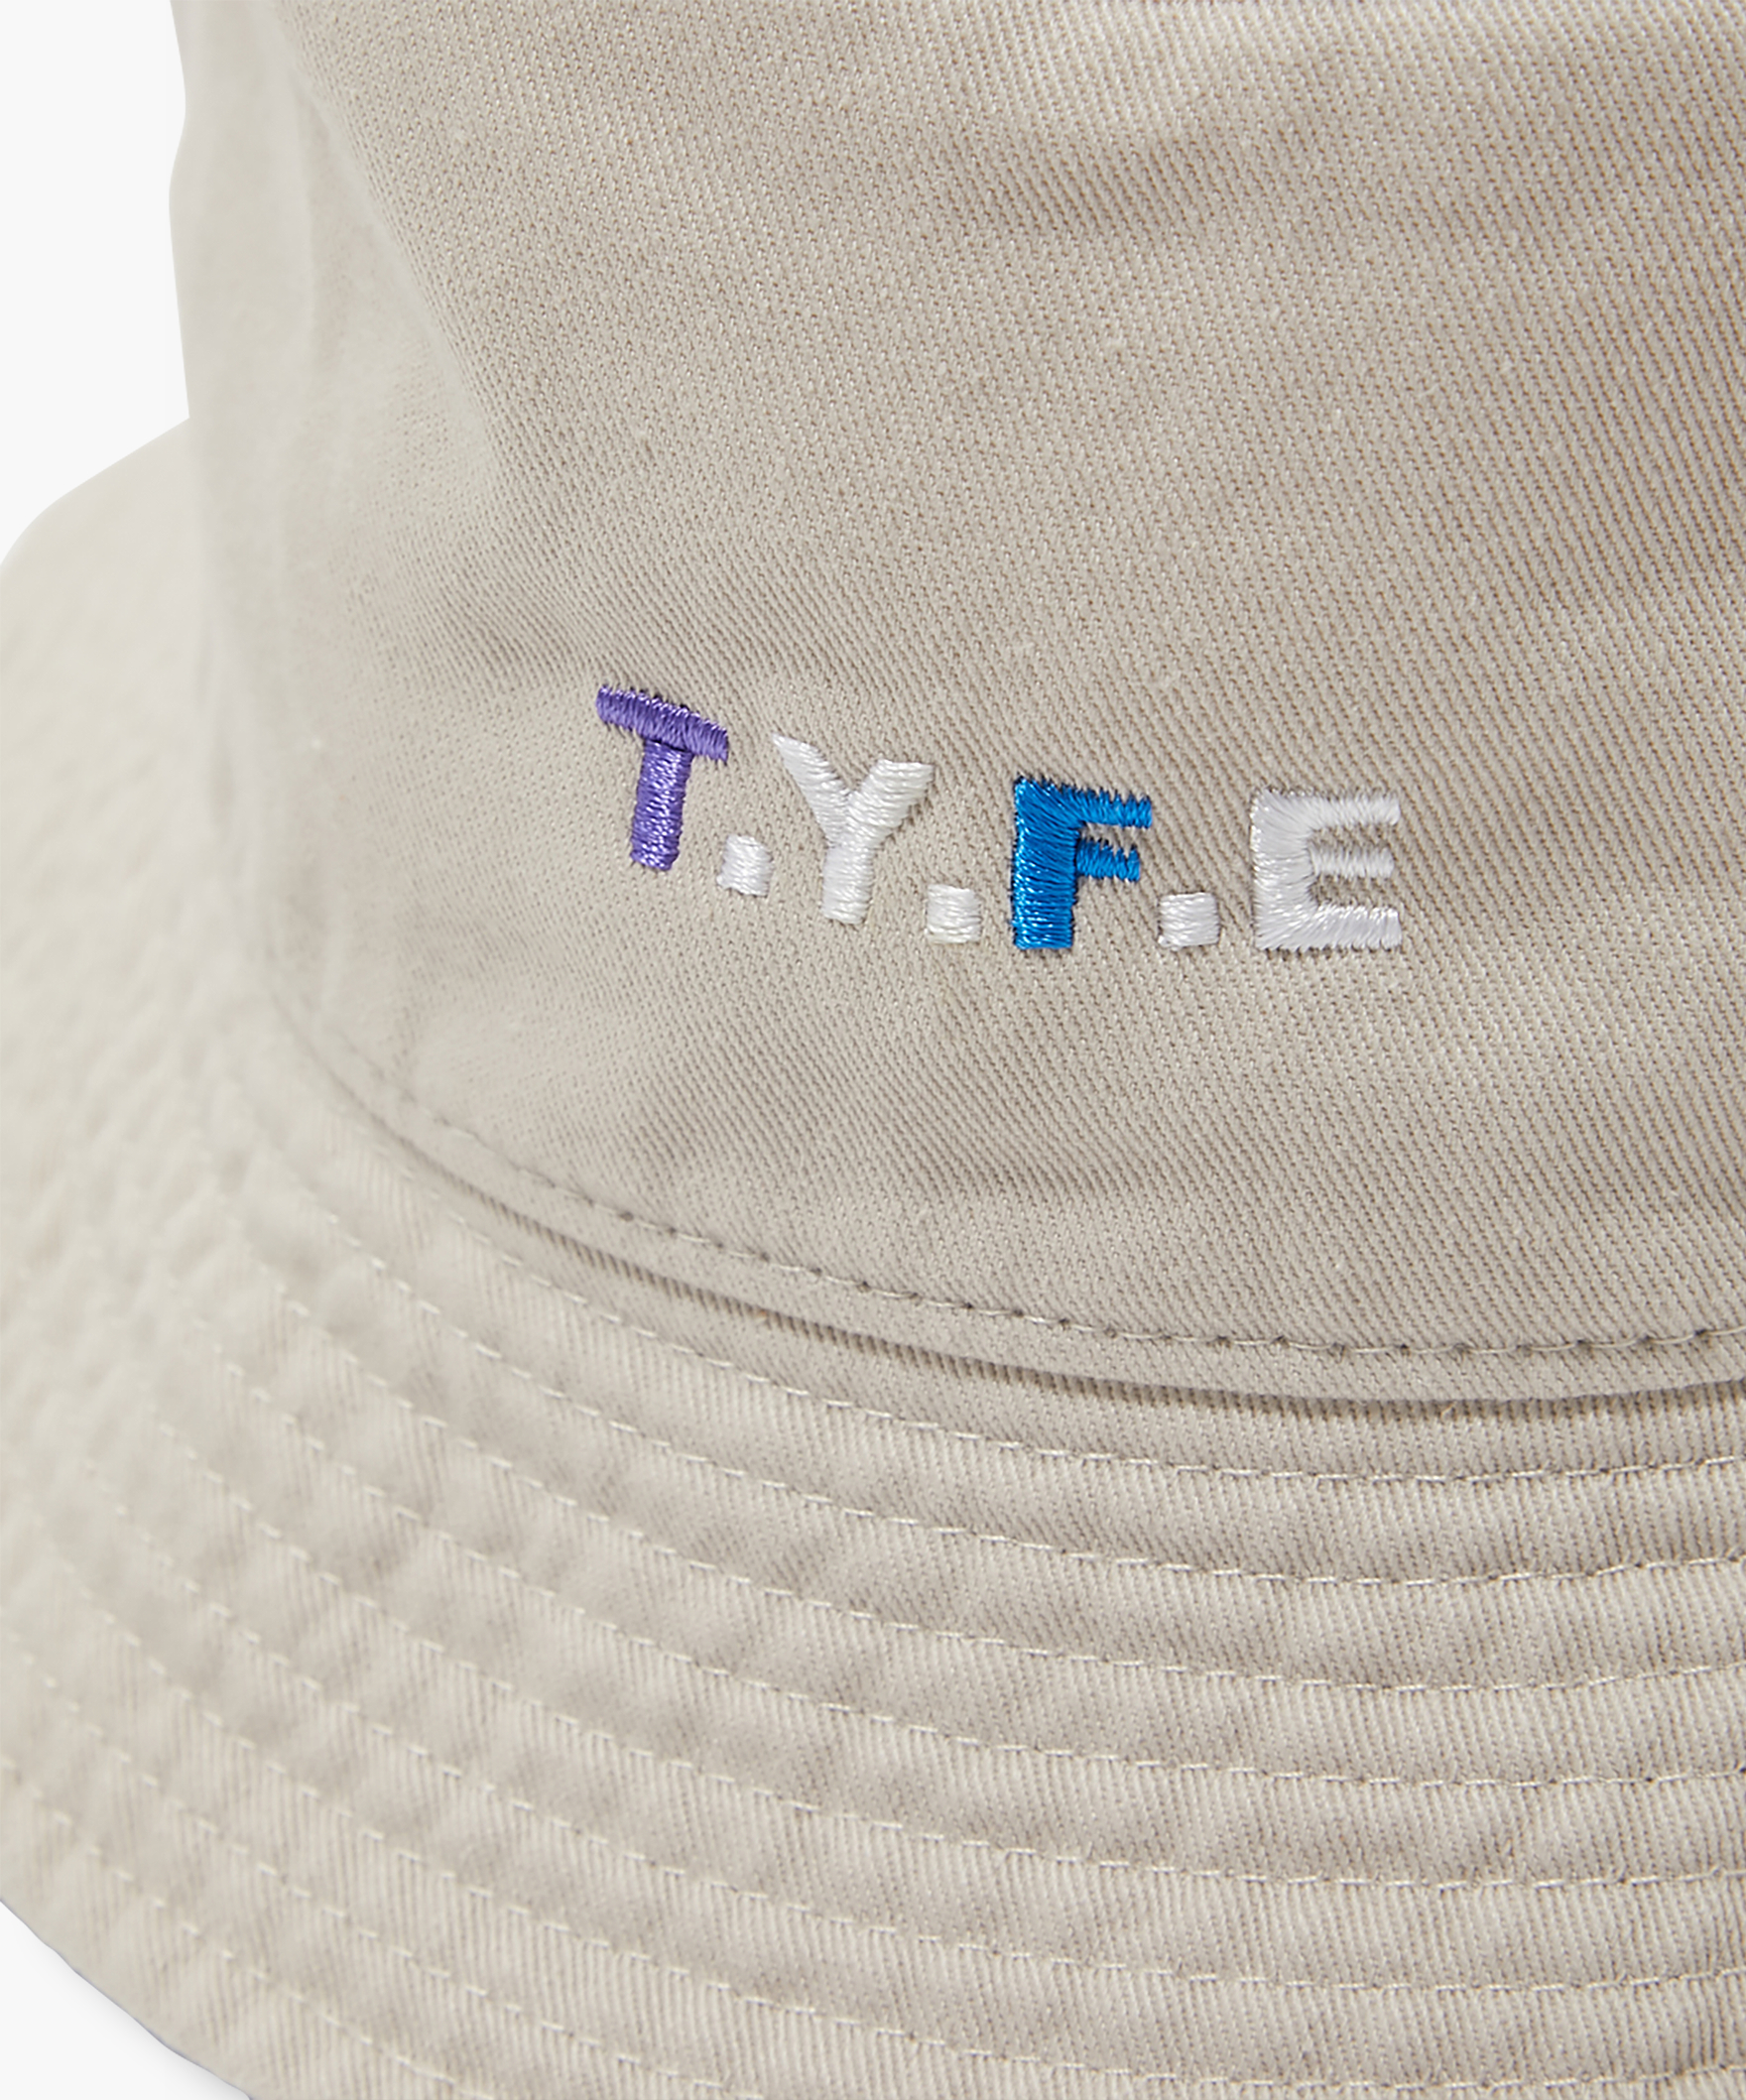 T.Y.F.E BUCKET HAT